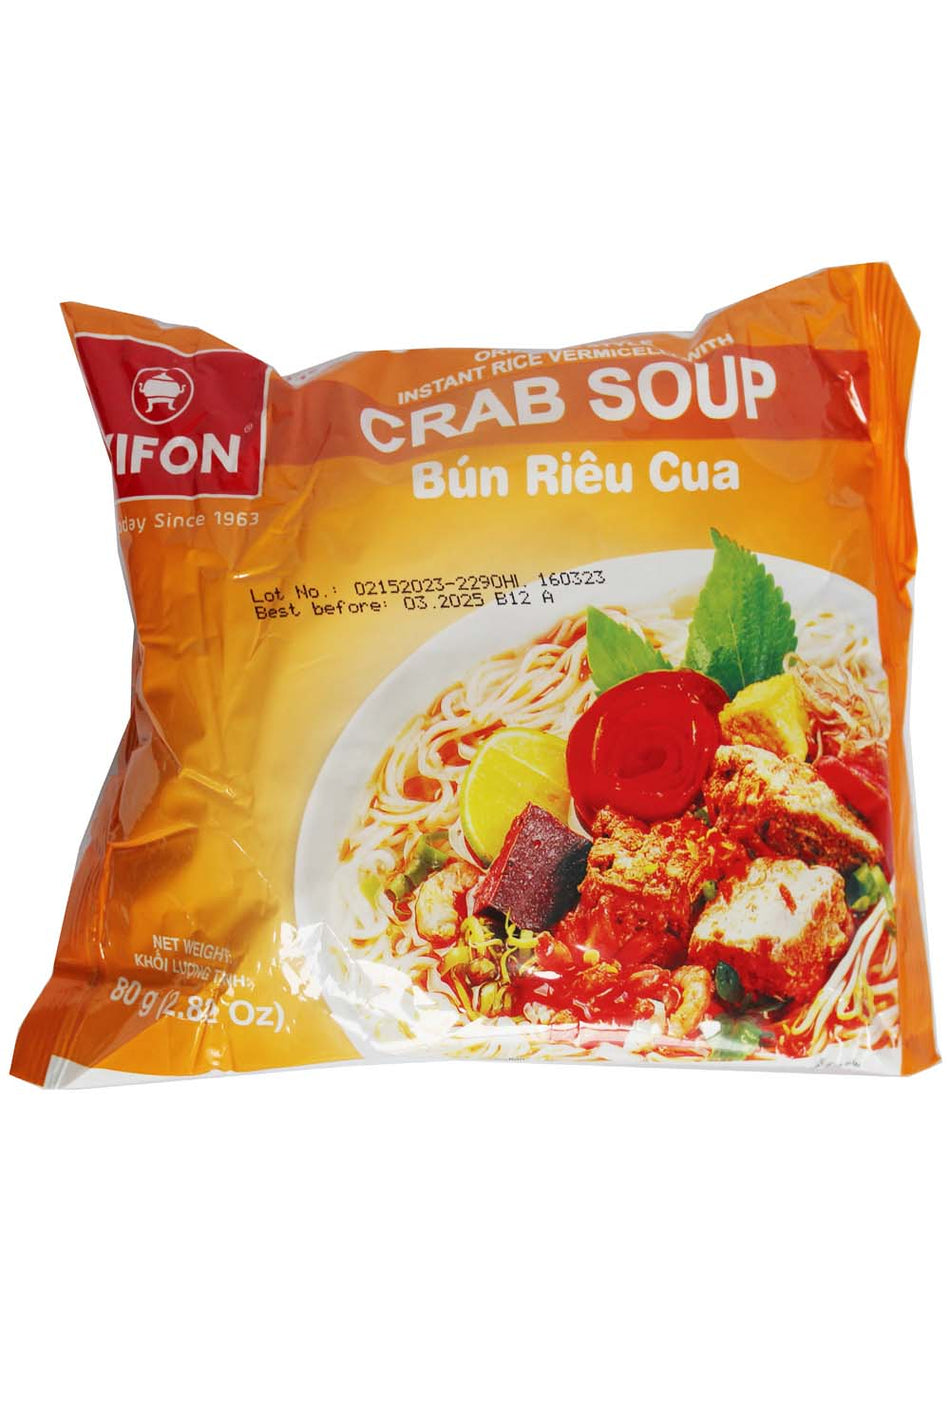 ViFON Crab Soup  Flavor instant vermicelli